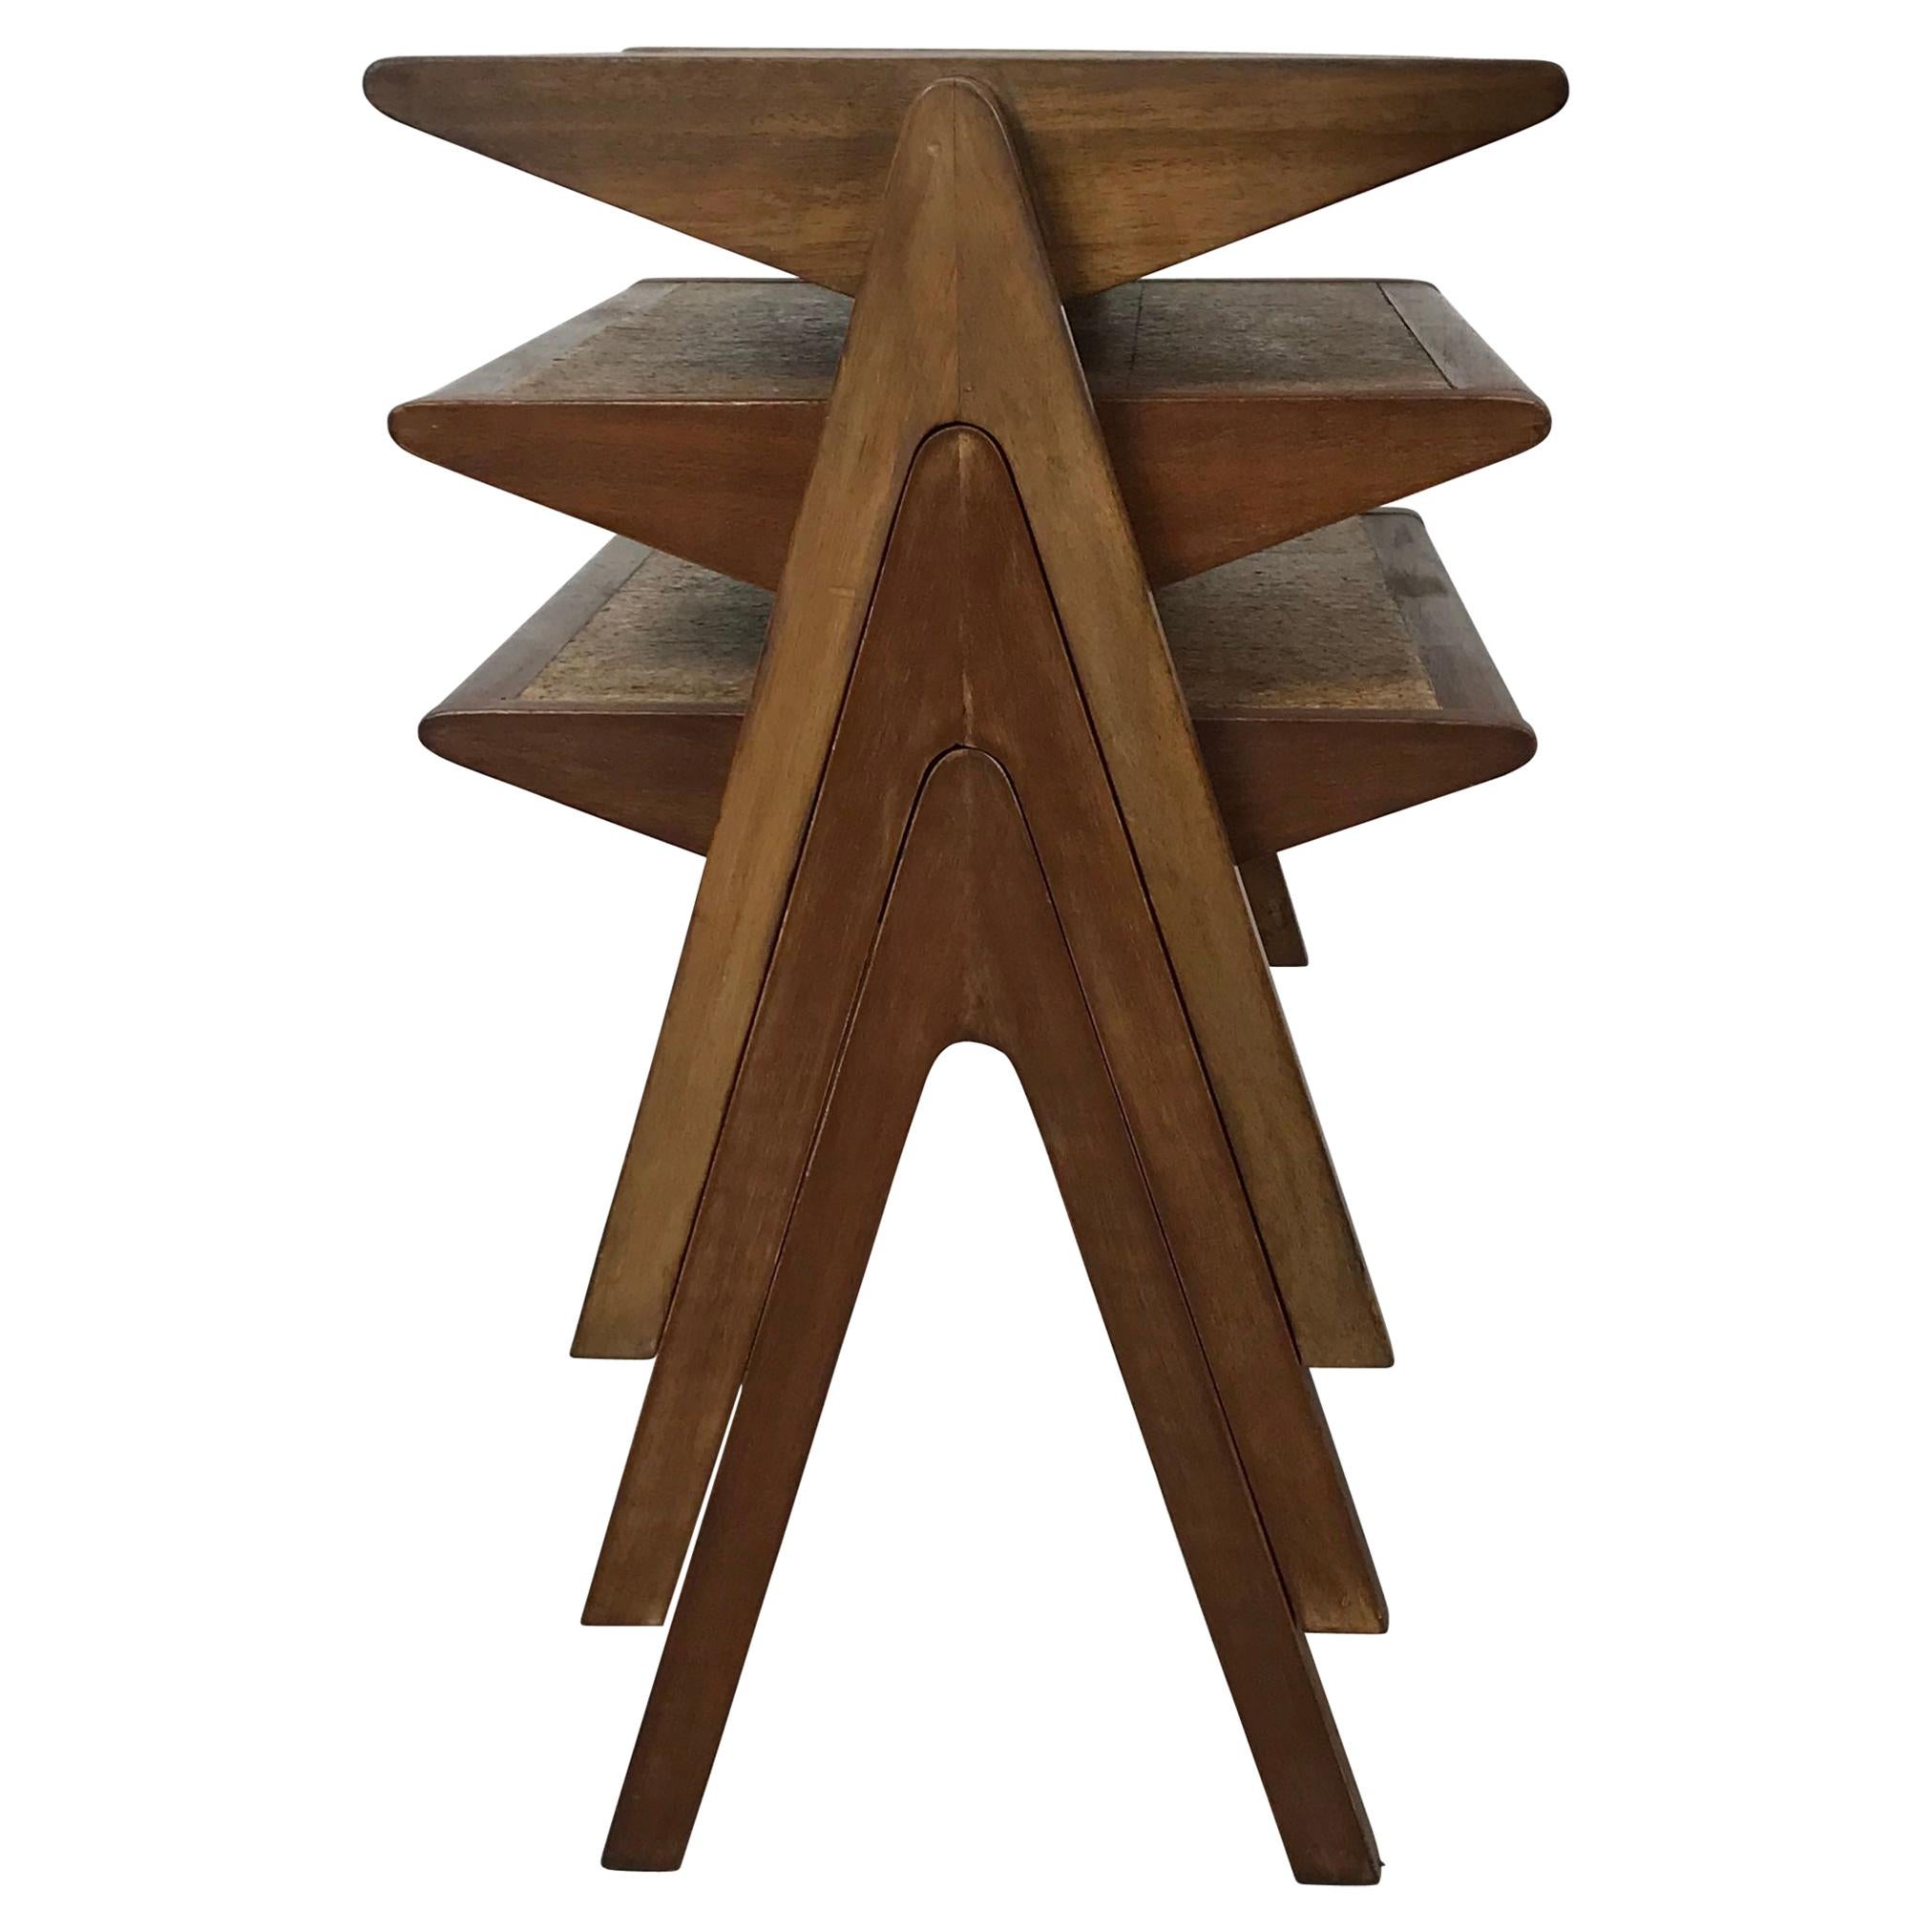 Modernist Nesting, Stacking Cork Top Tables by Bob Roukema for Jon Jansen